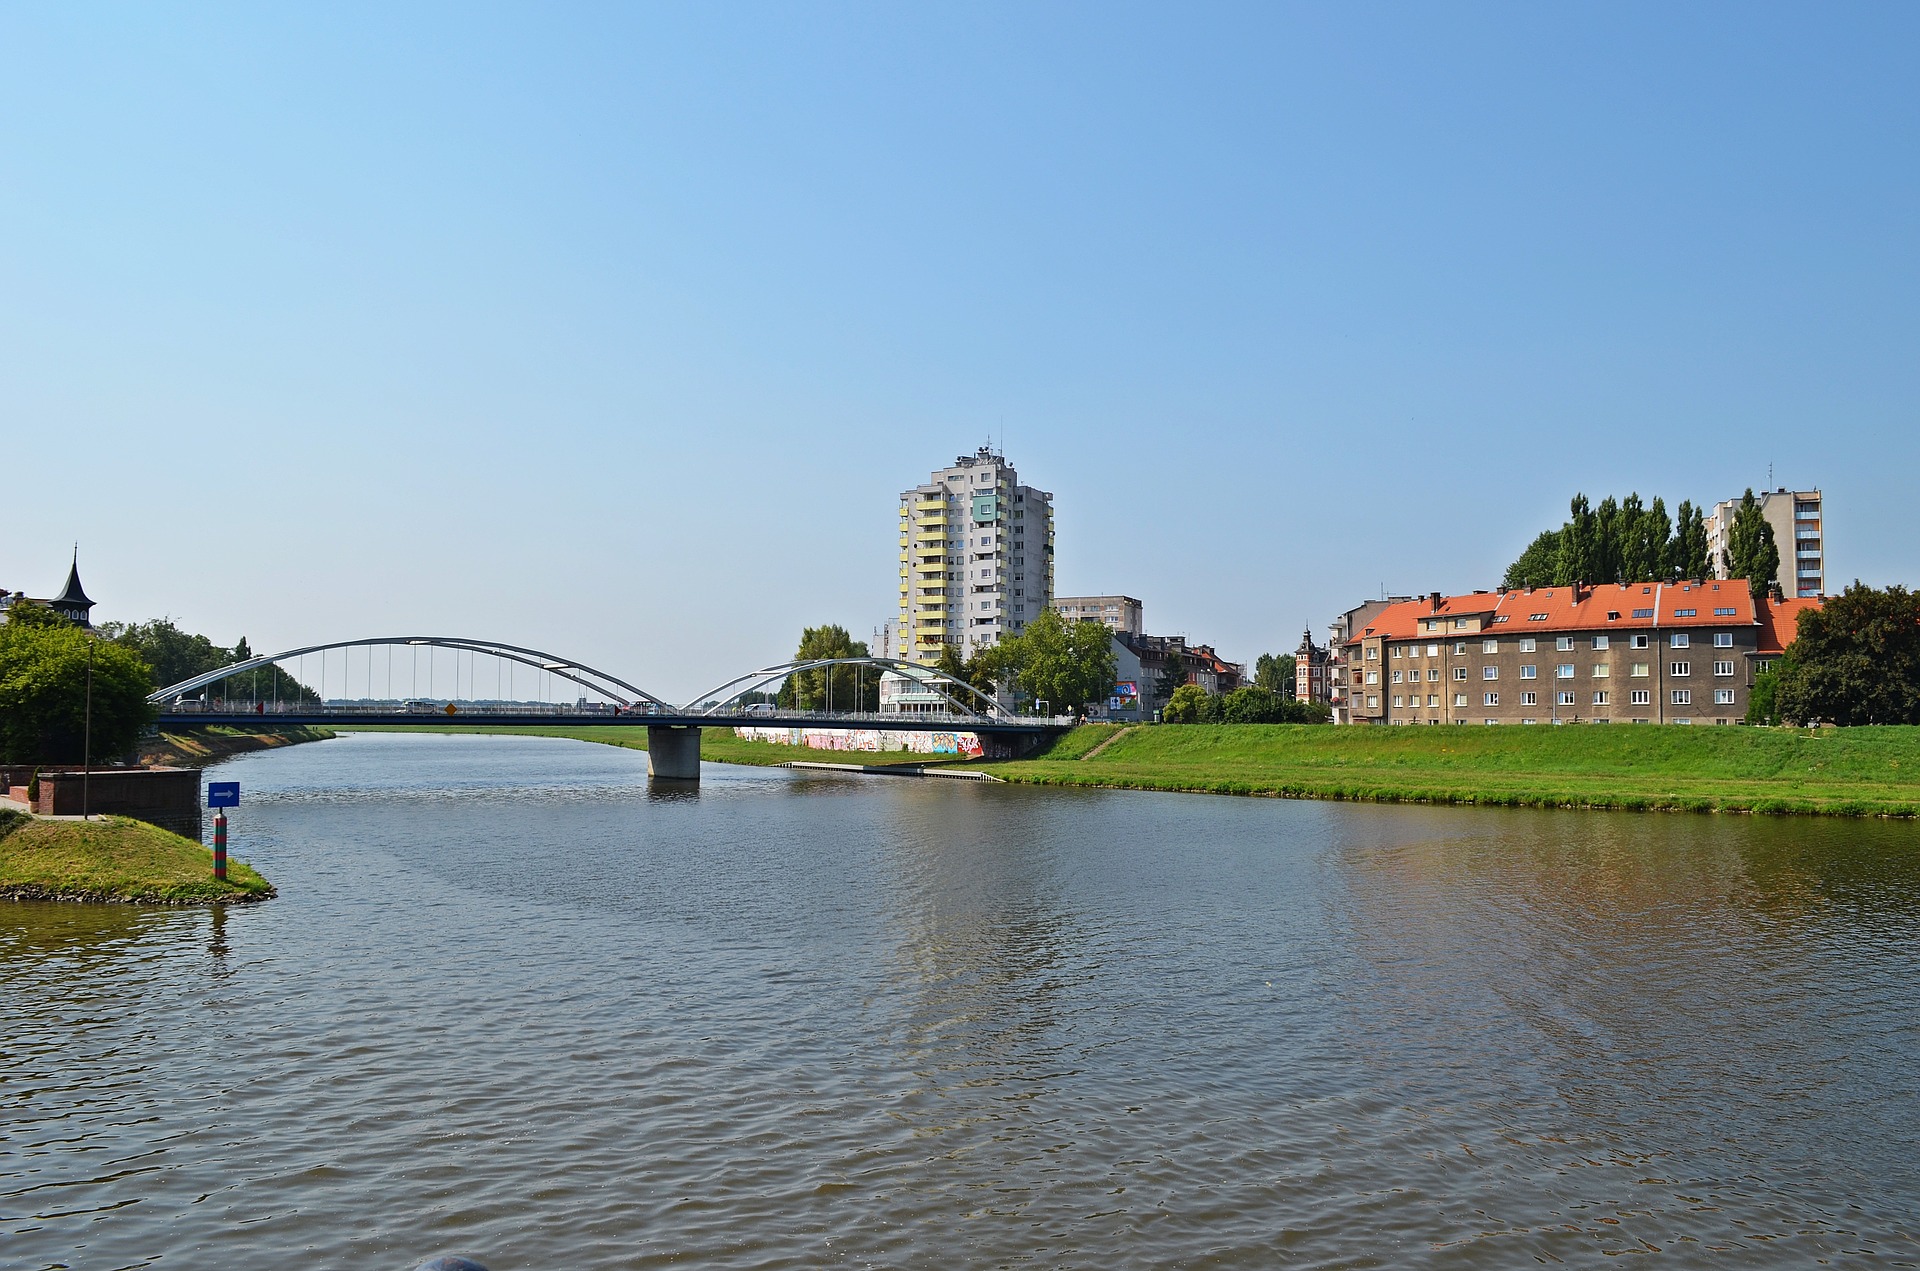 Plexi - Opole